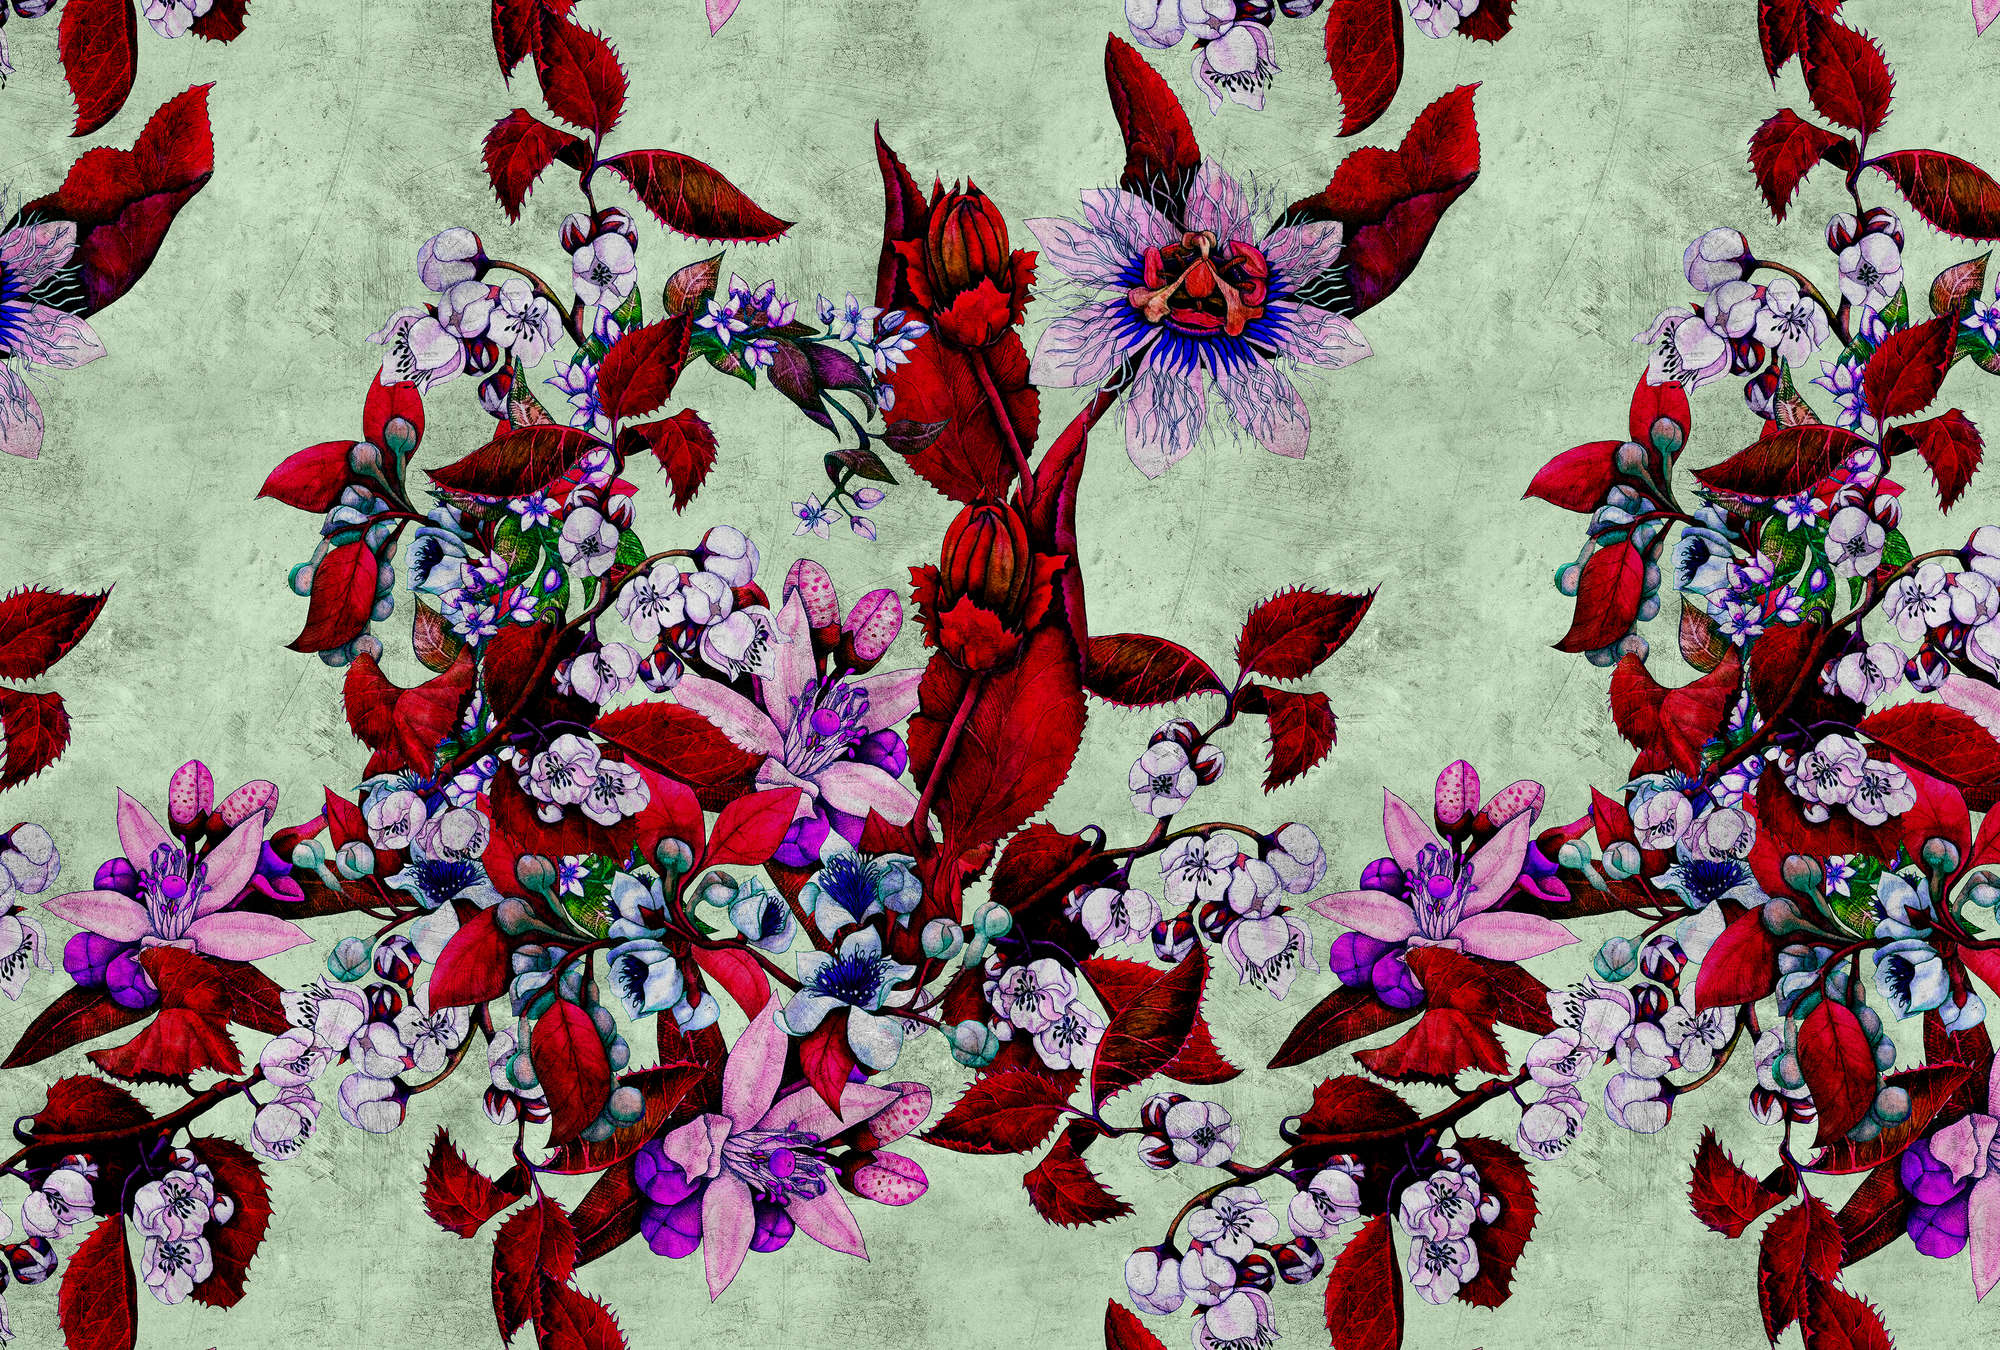             Tropical Passion 3 - Fototapete mit verspieltem Blütendesign- Kratzer Struktur – Grün, Rot | Premium Glattvlies
        